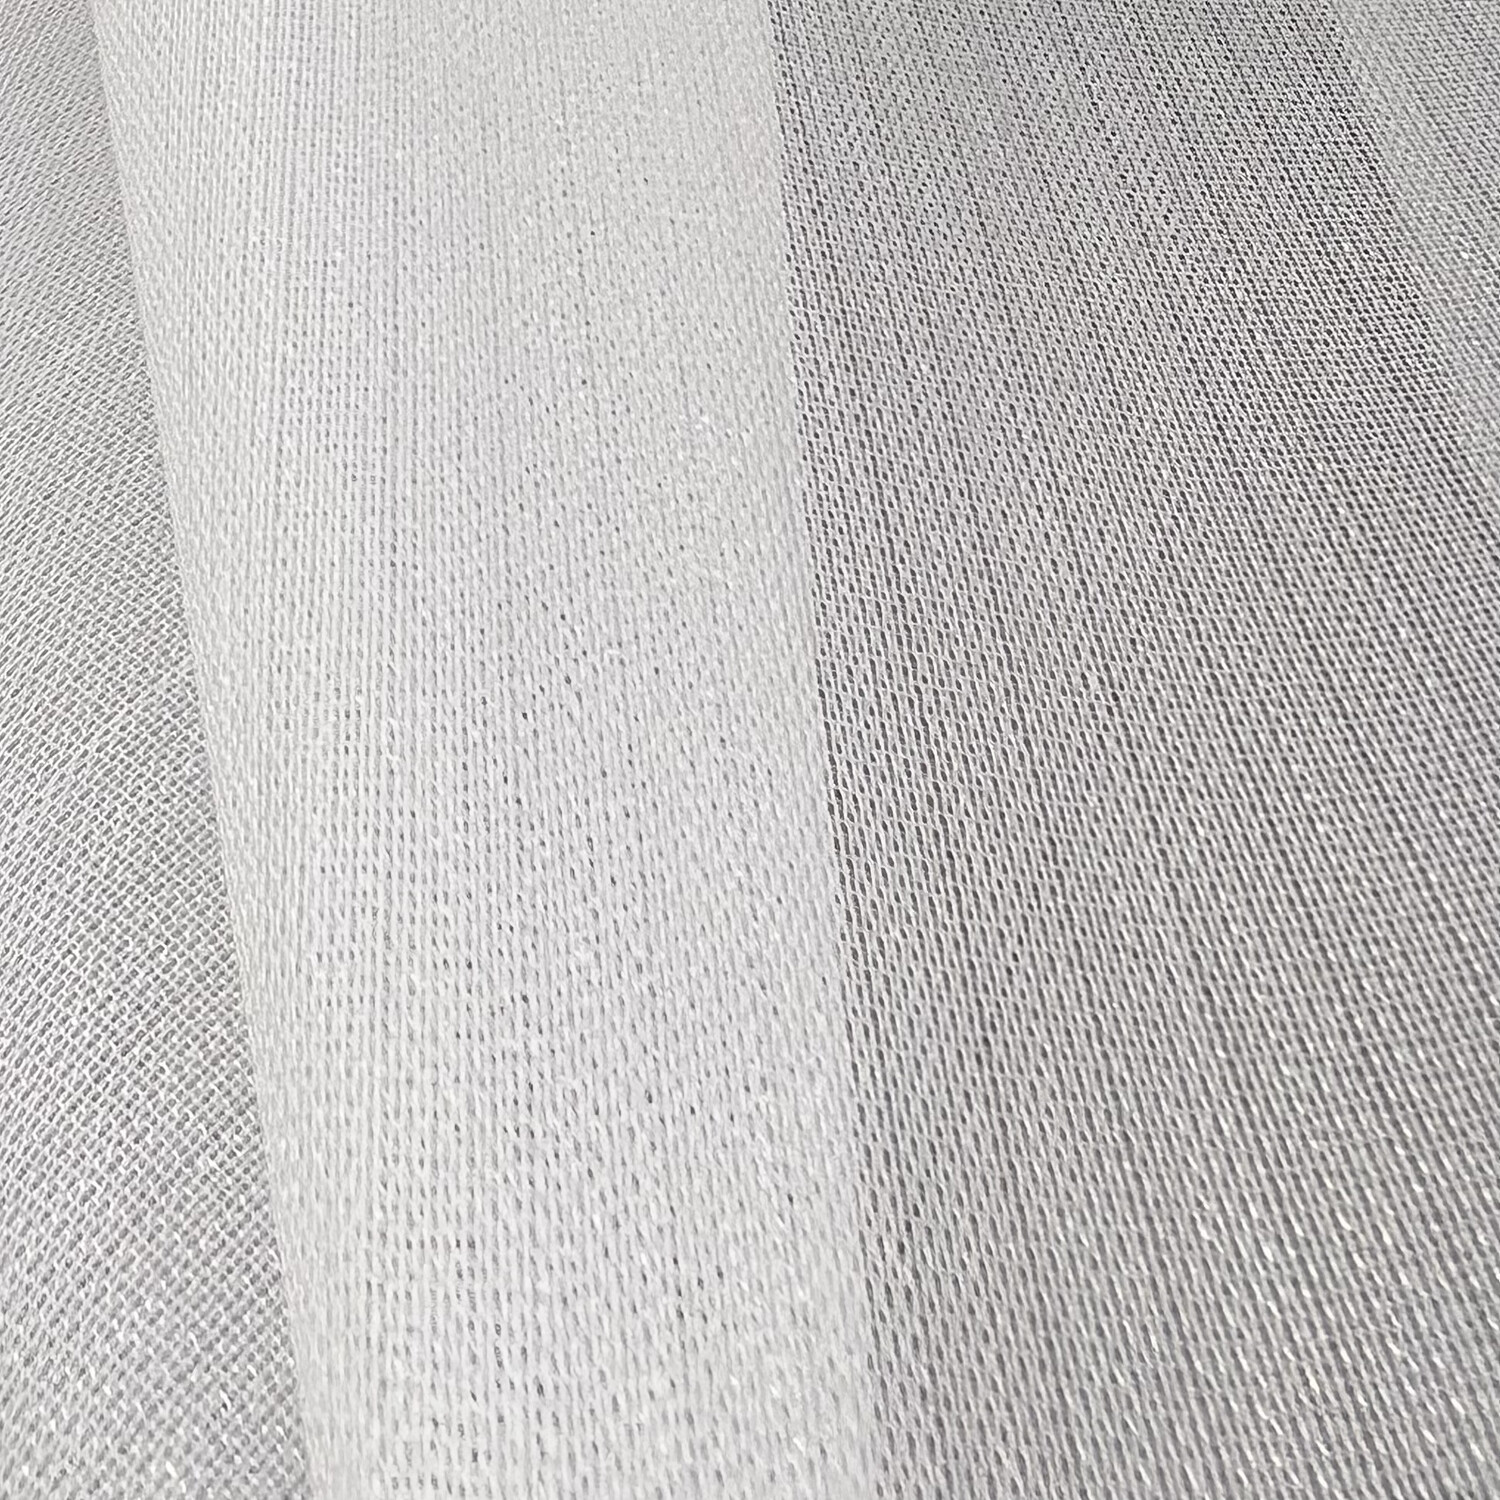 Прозрачная штора сетчатая под лен кремовая 300*290 см